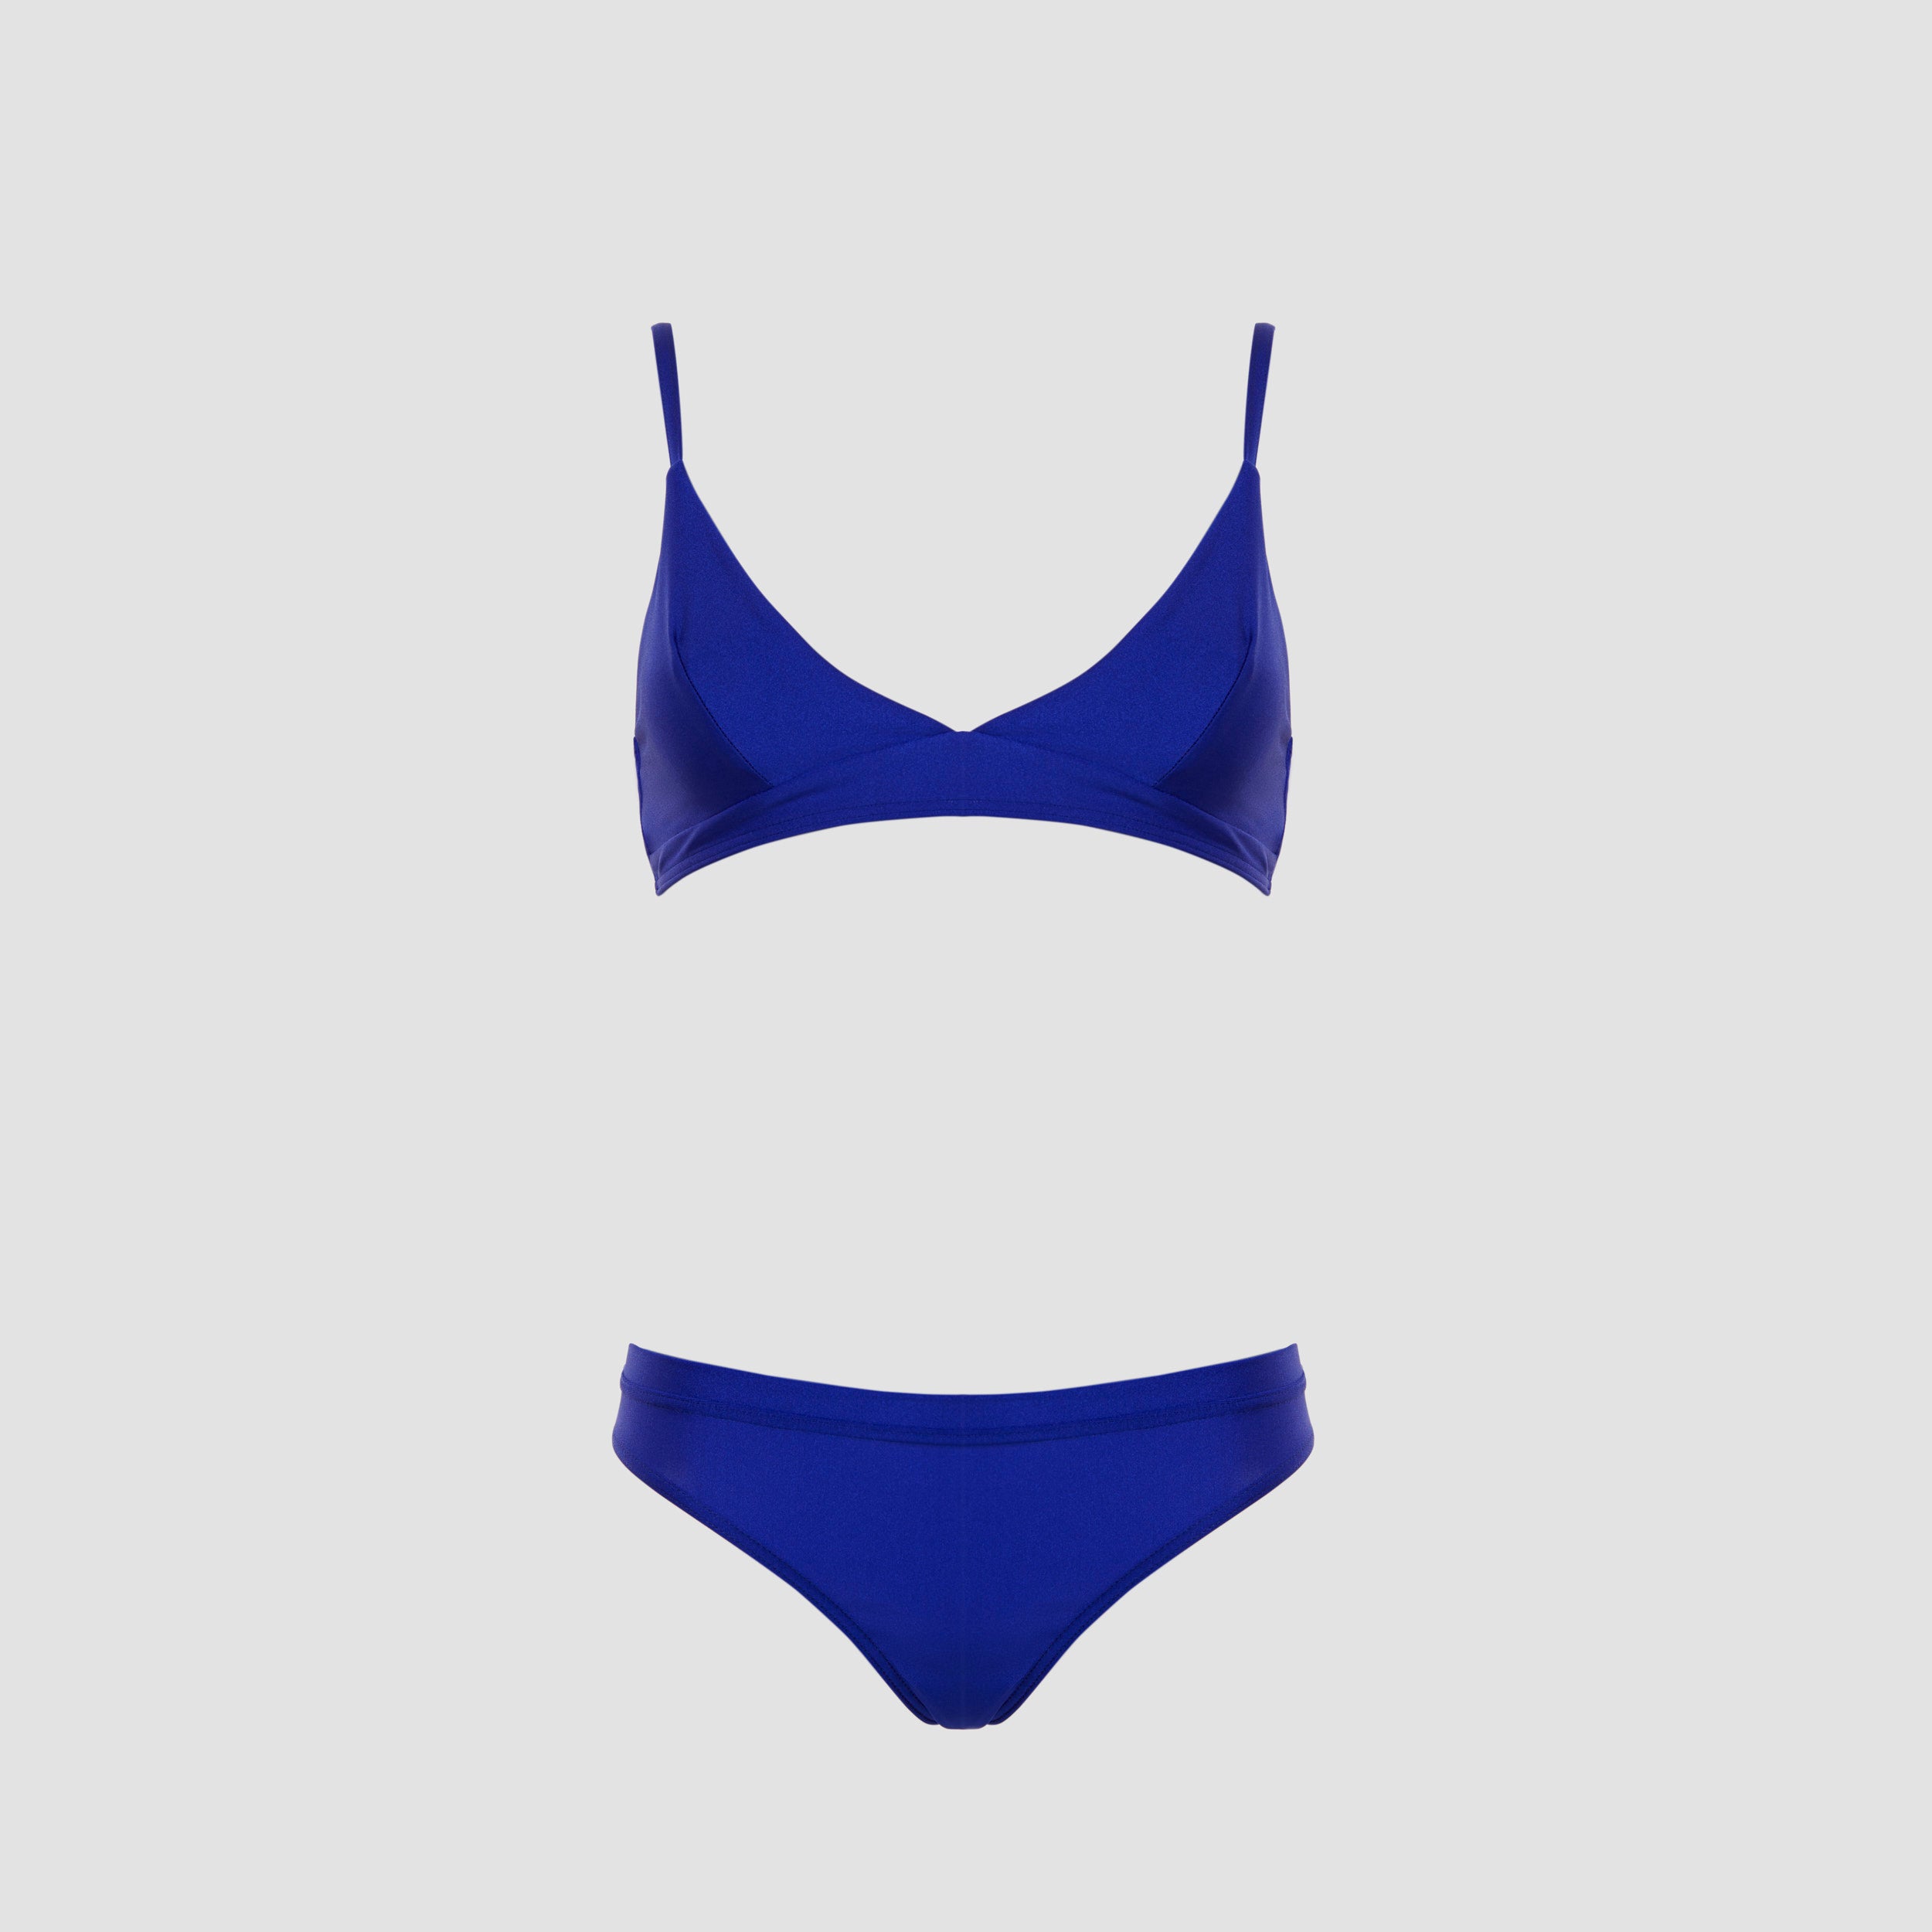 Dvoudílné plavky Donna ve výrazné modré podtrhnou vaši ženskost a přirozenou krásu. Vyrobeno v ČR.